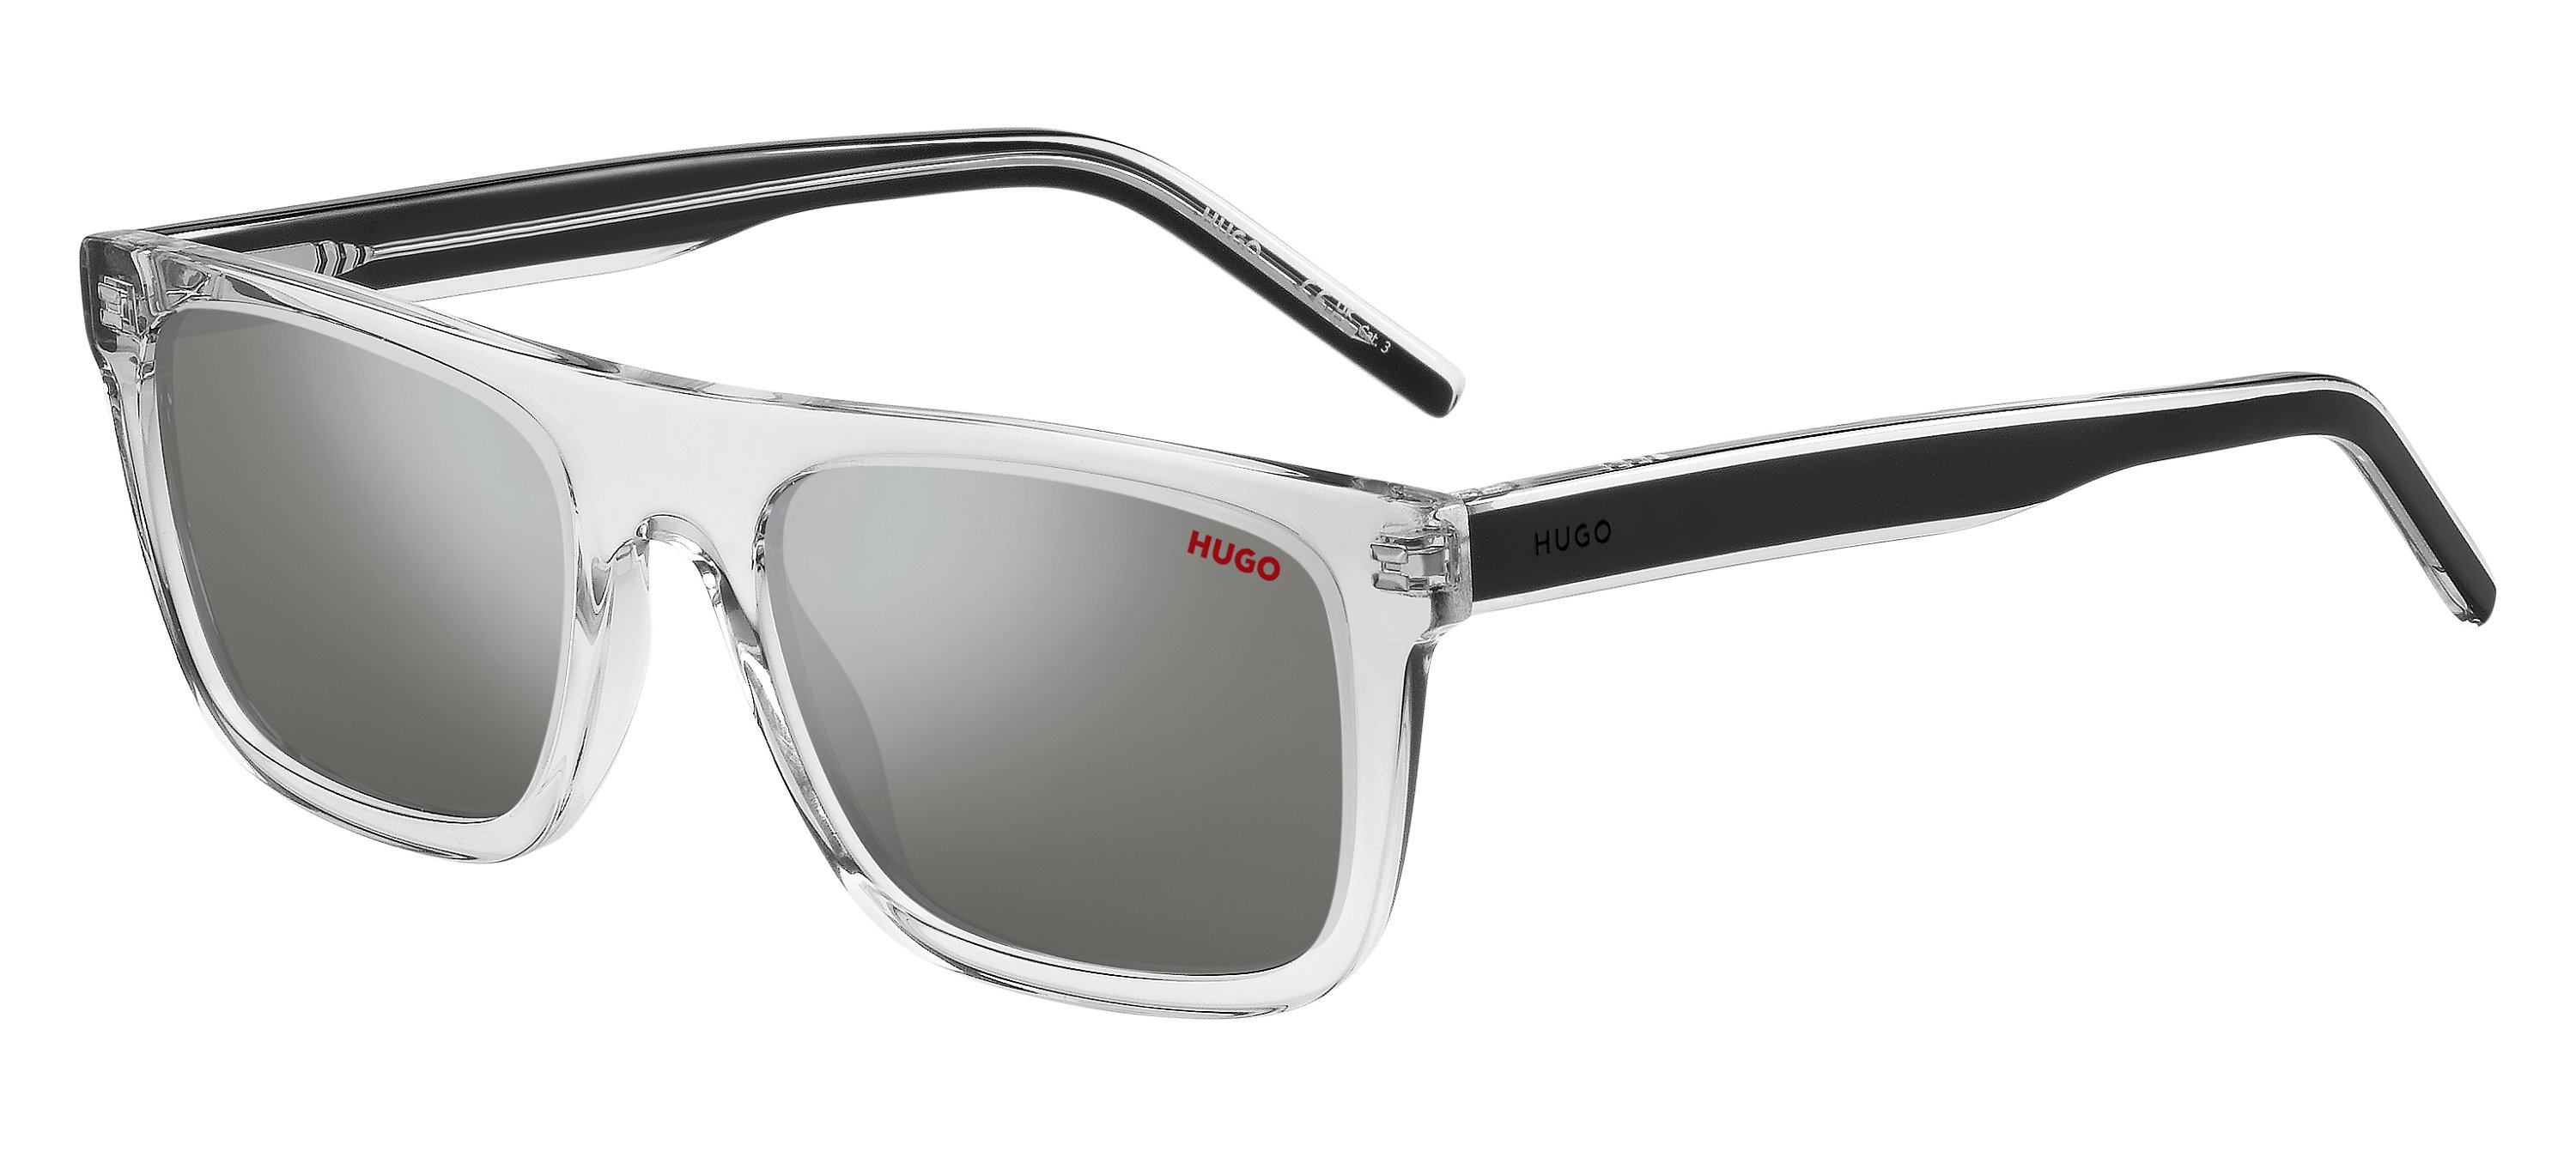 Das Bild zeigt die Sonnenbrille HG1297/S MNG von der Marke Hugo in grau/schwarz.